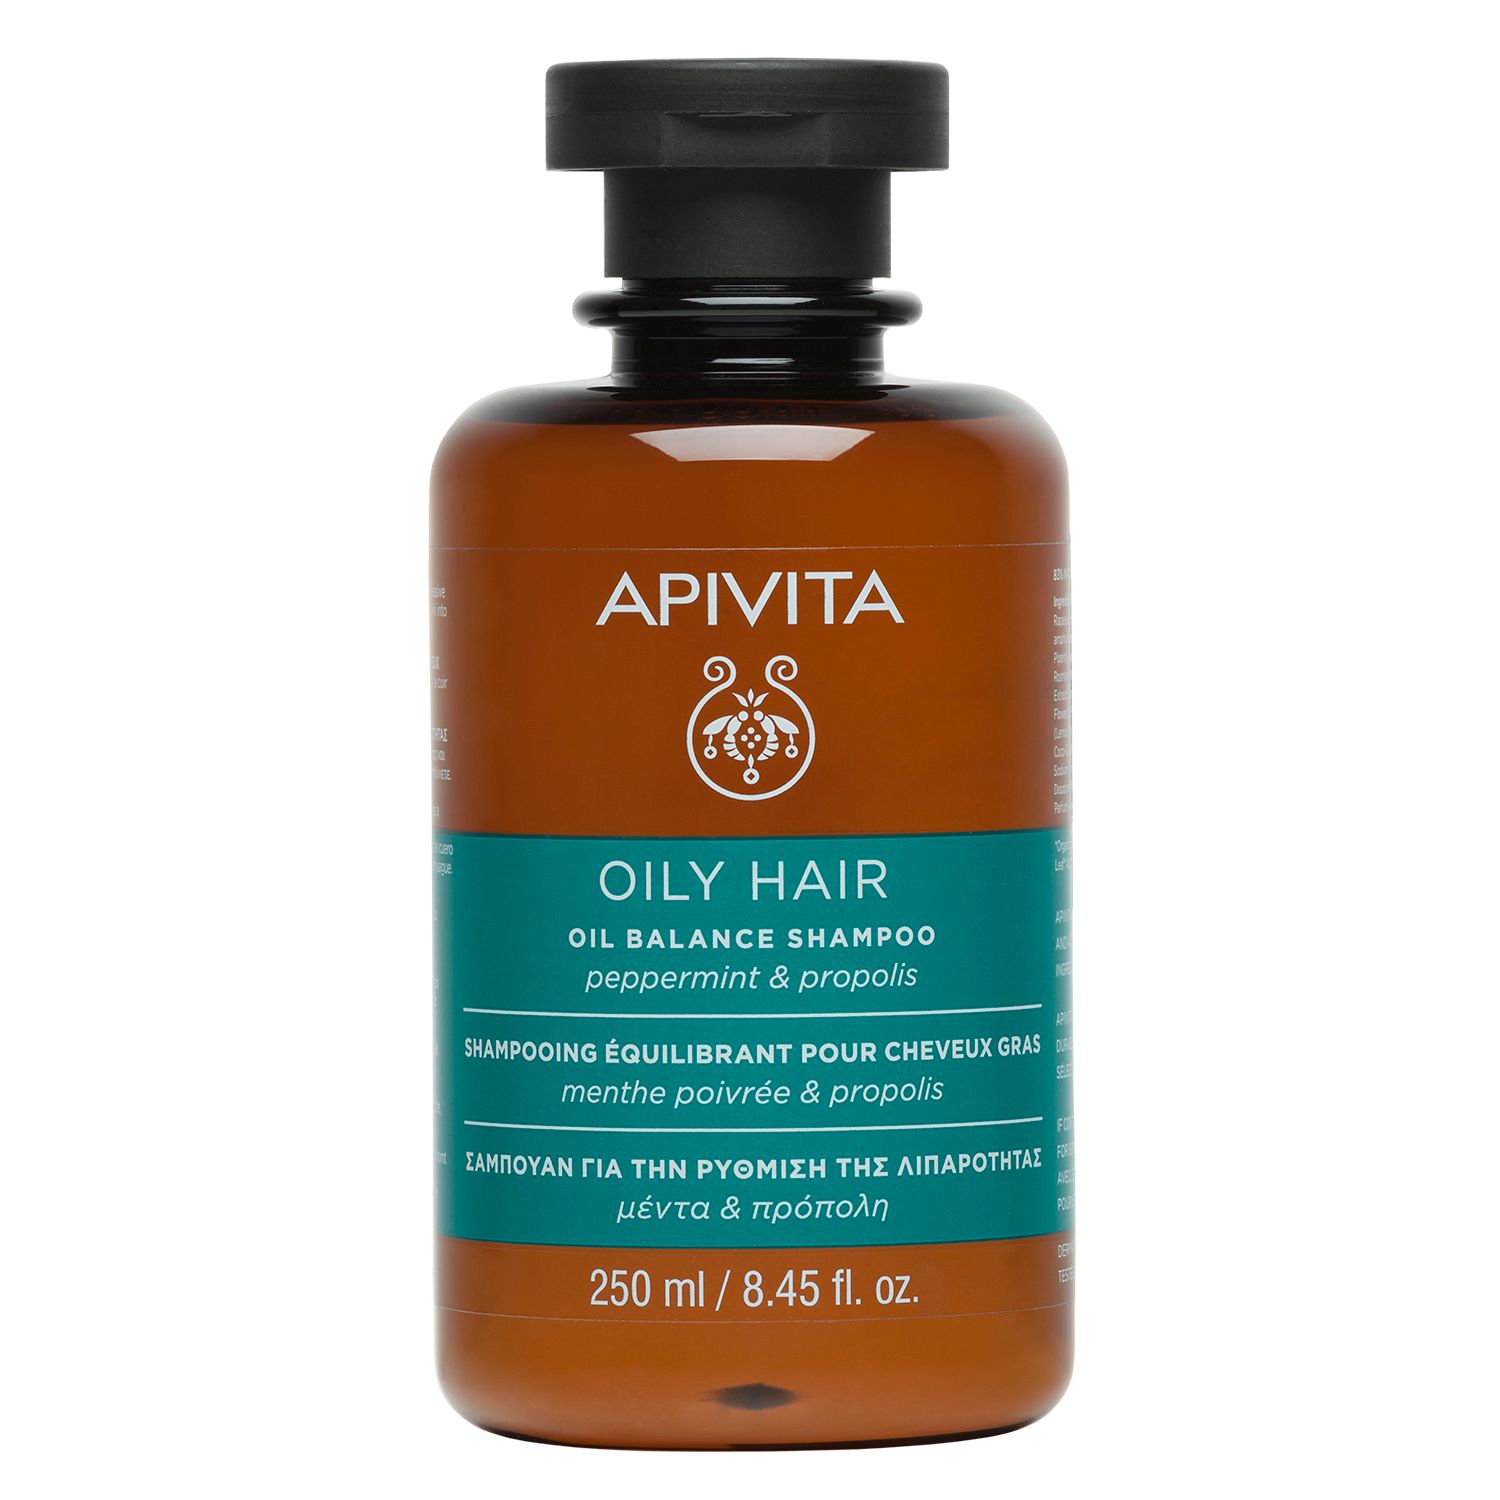 Image of APIVITA OILY HAIR Shampoo